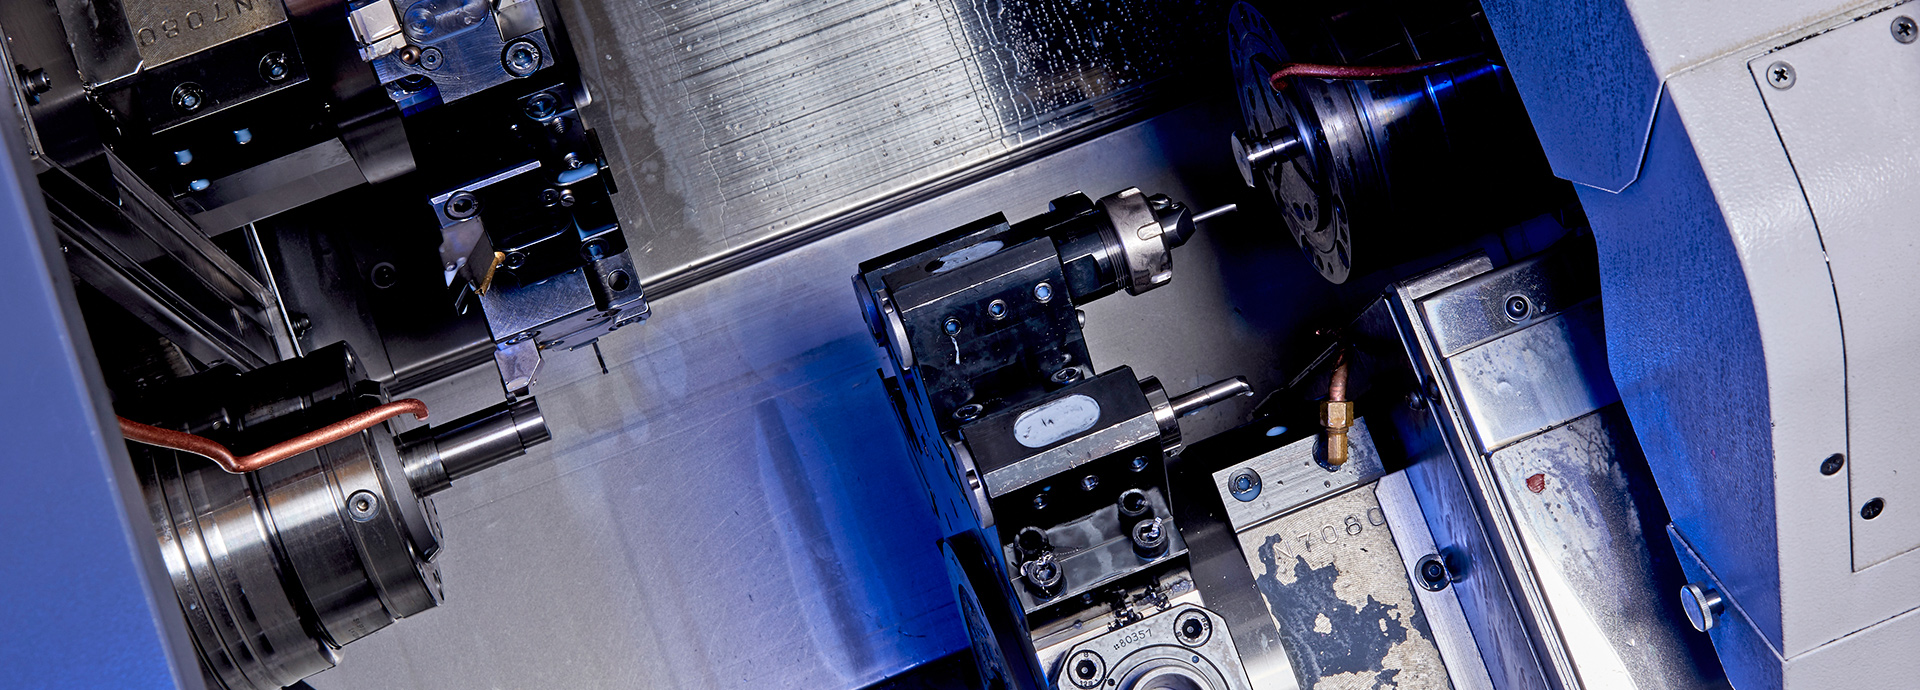 Vores  CNC-drejeafdeling har flere maskiner med påmonteret stanglader så de kan køre ubemandet i døgndrift